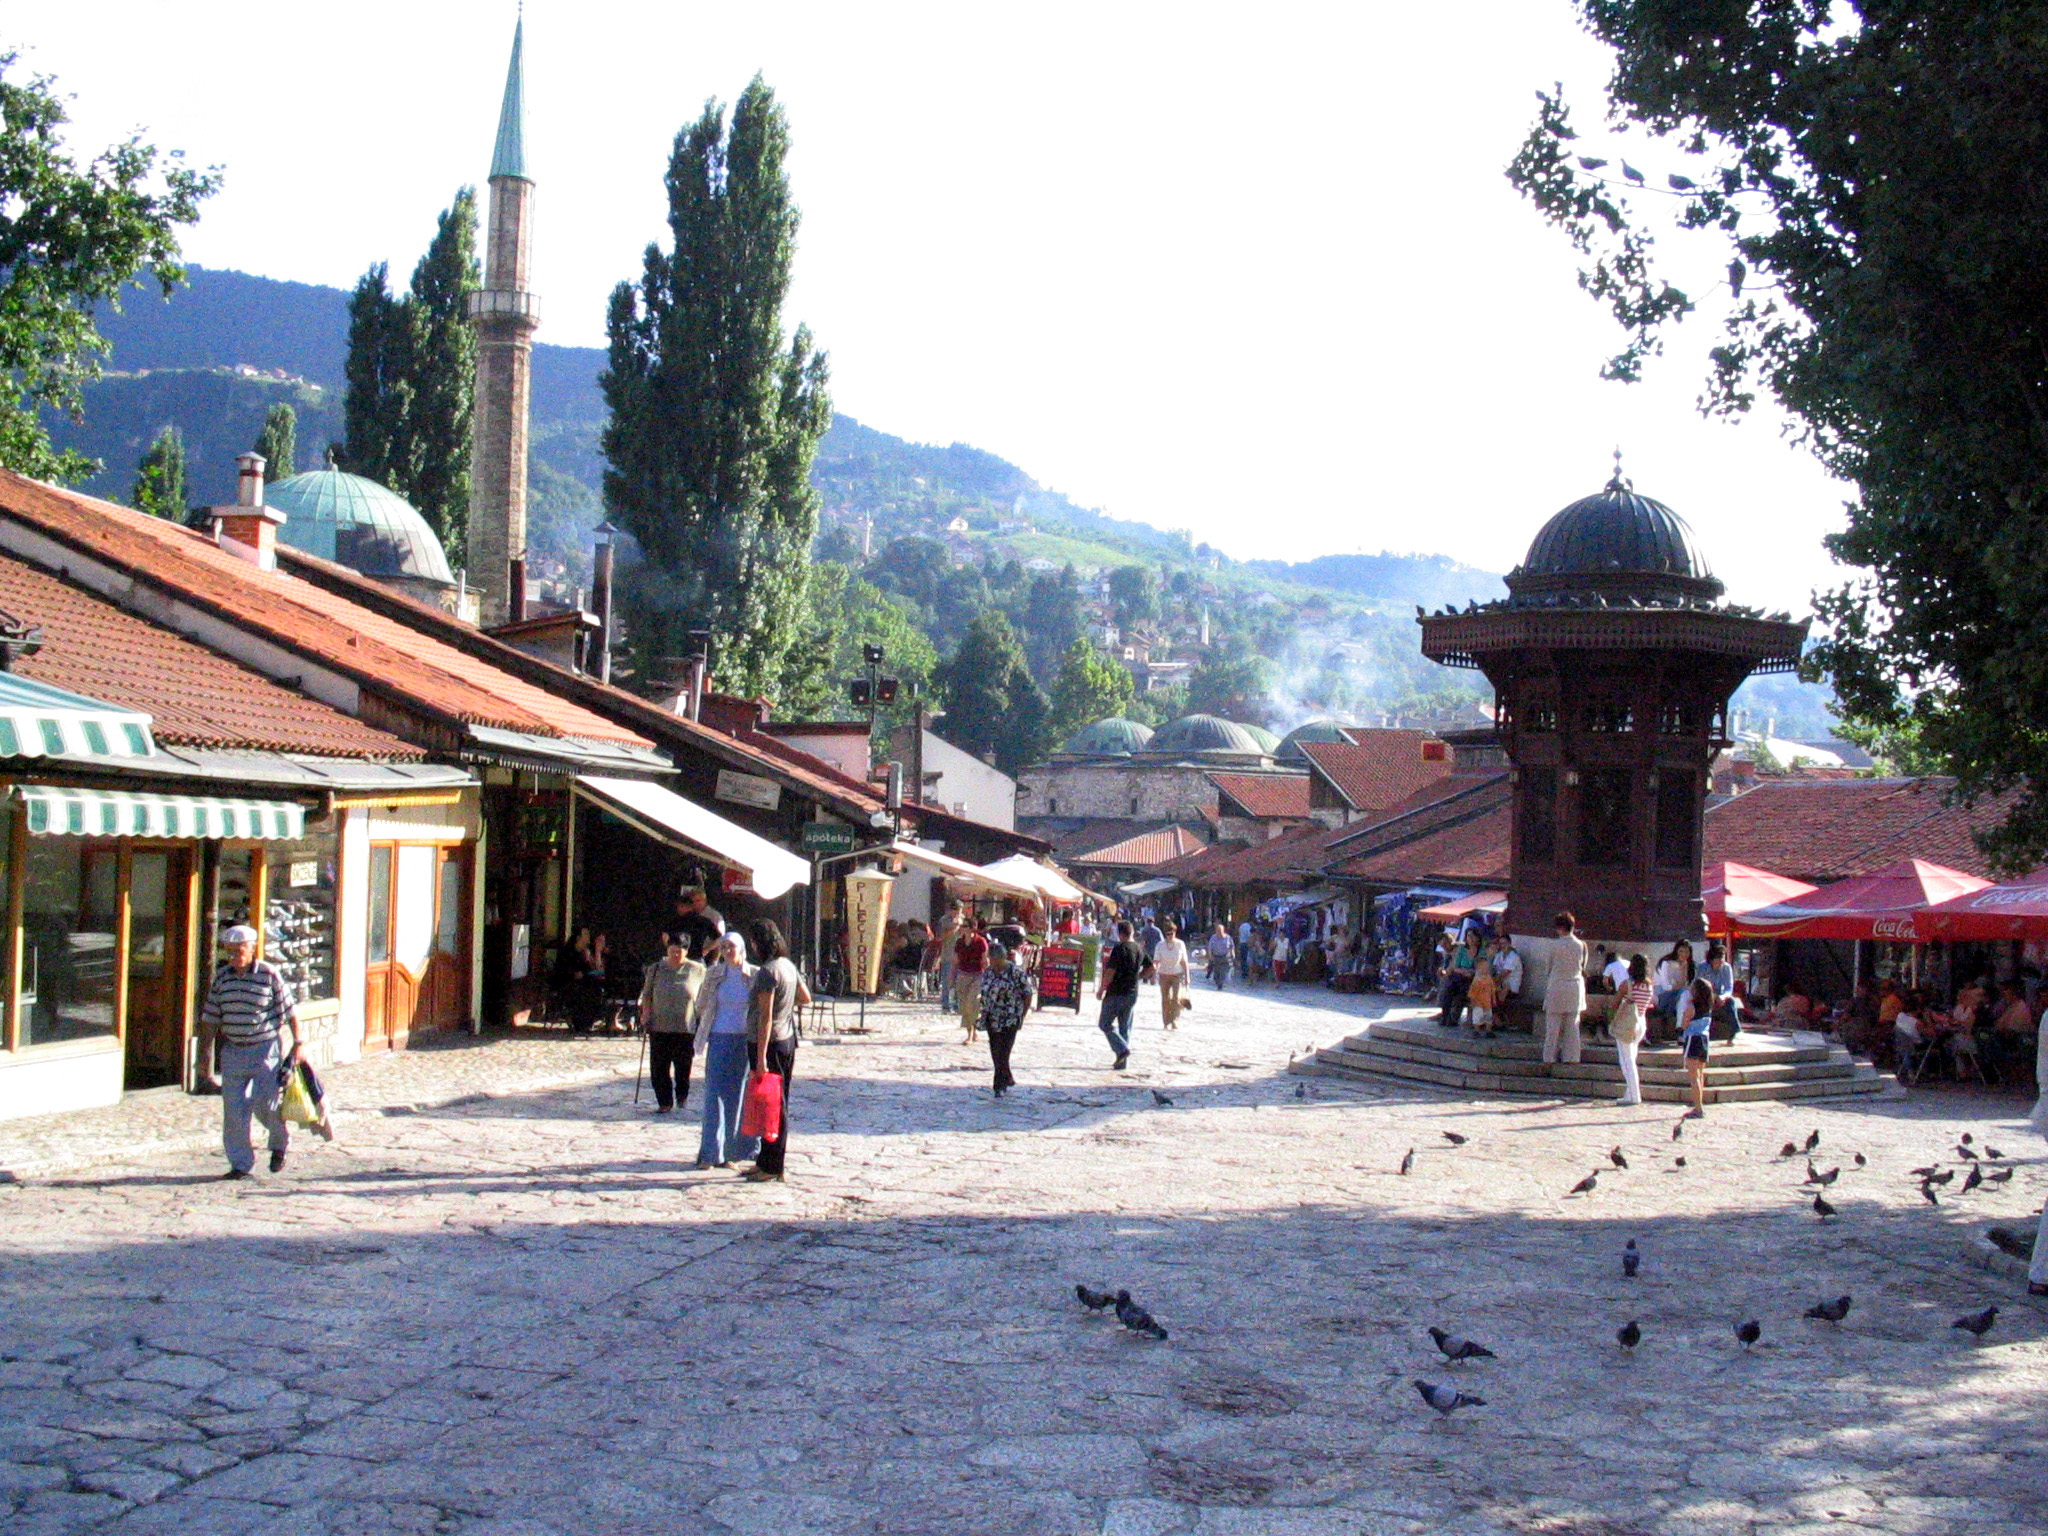 Day in Sarajevo